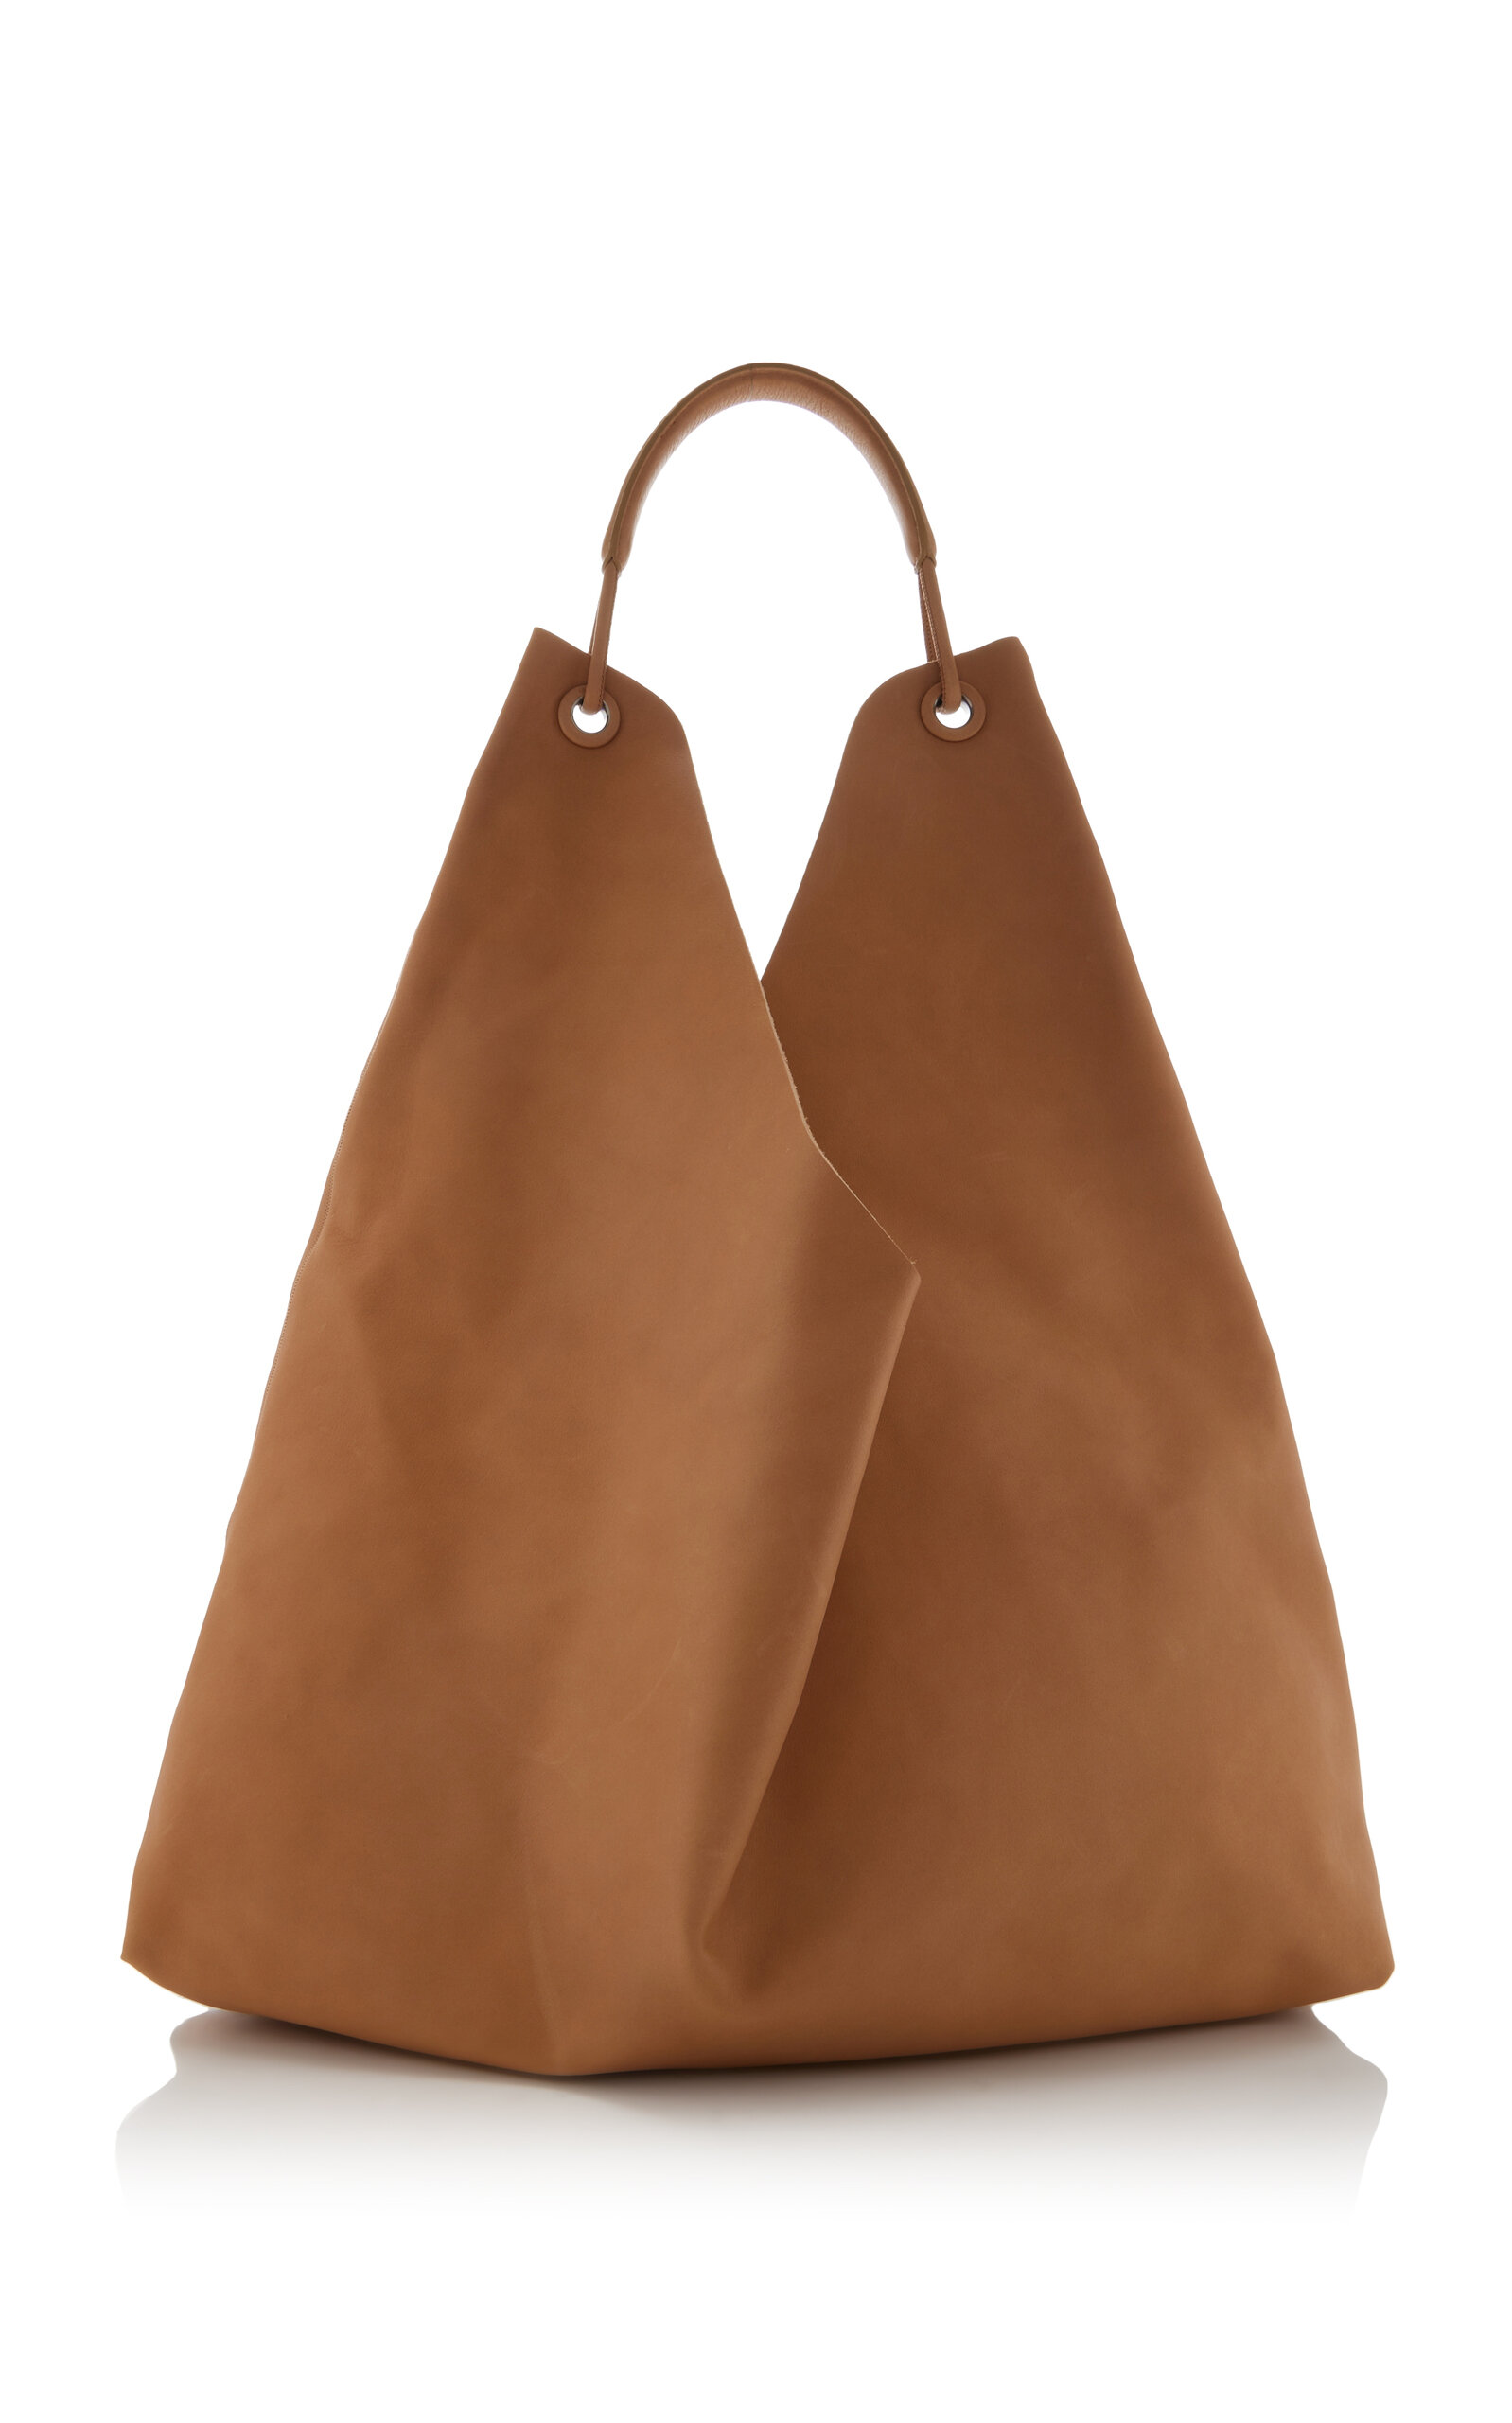 Bindle 3 Leather Hobo Bag